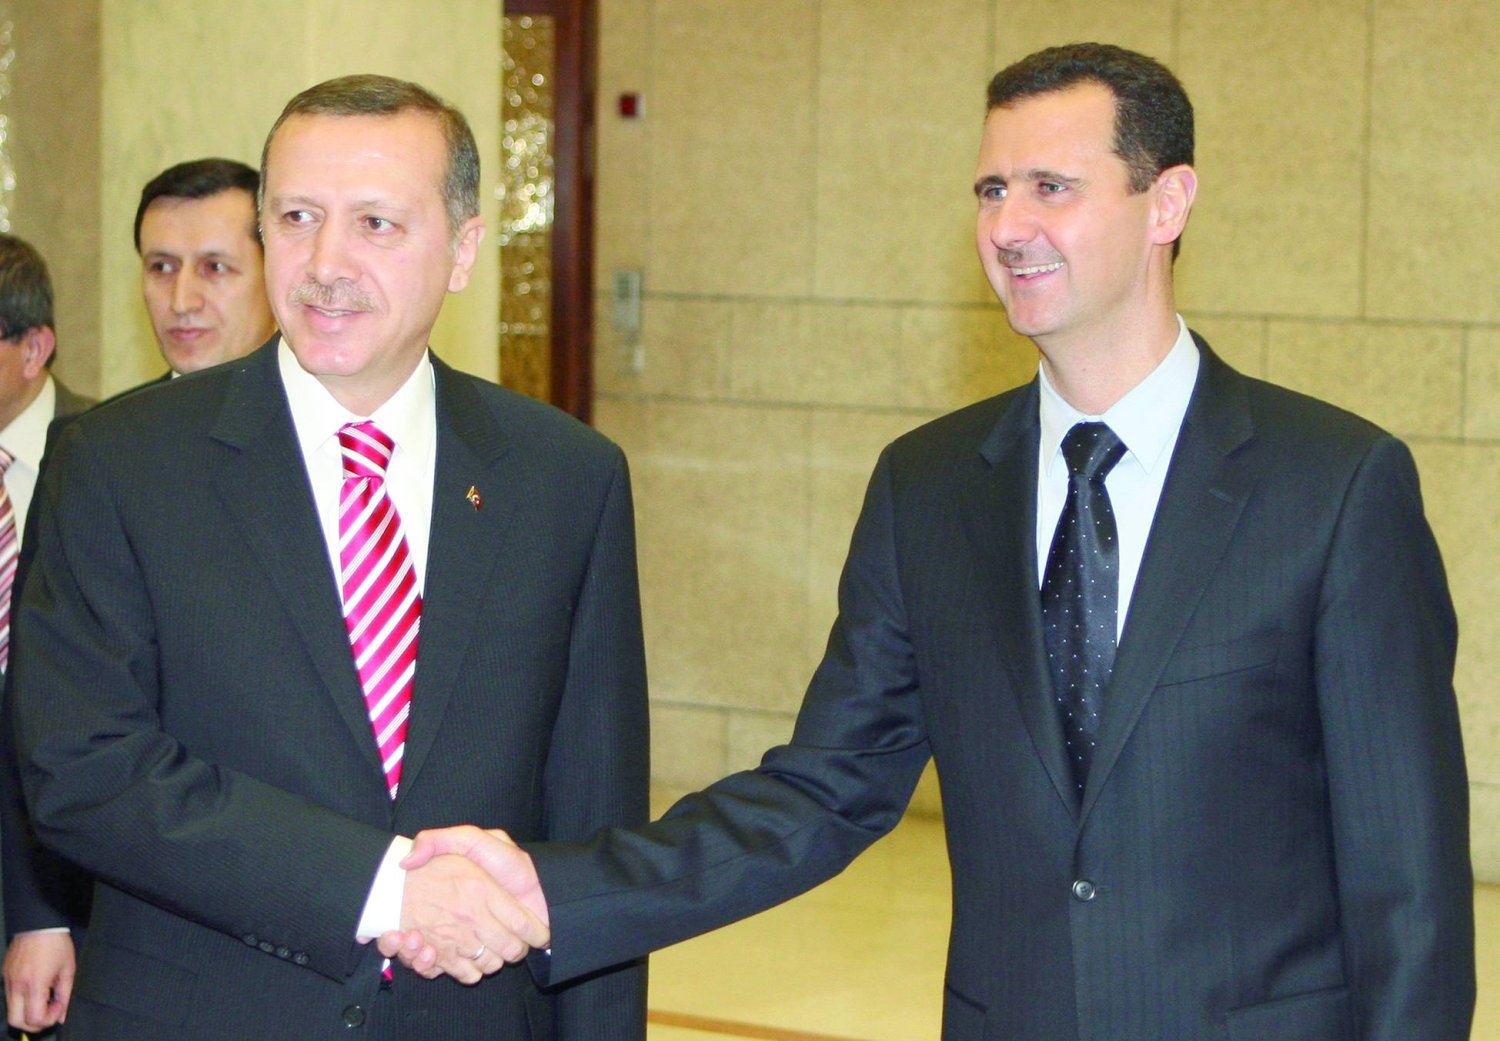 مصادر تركيا: لقاء الأسد وإردوغان الشهر المقبل